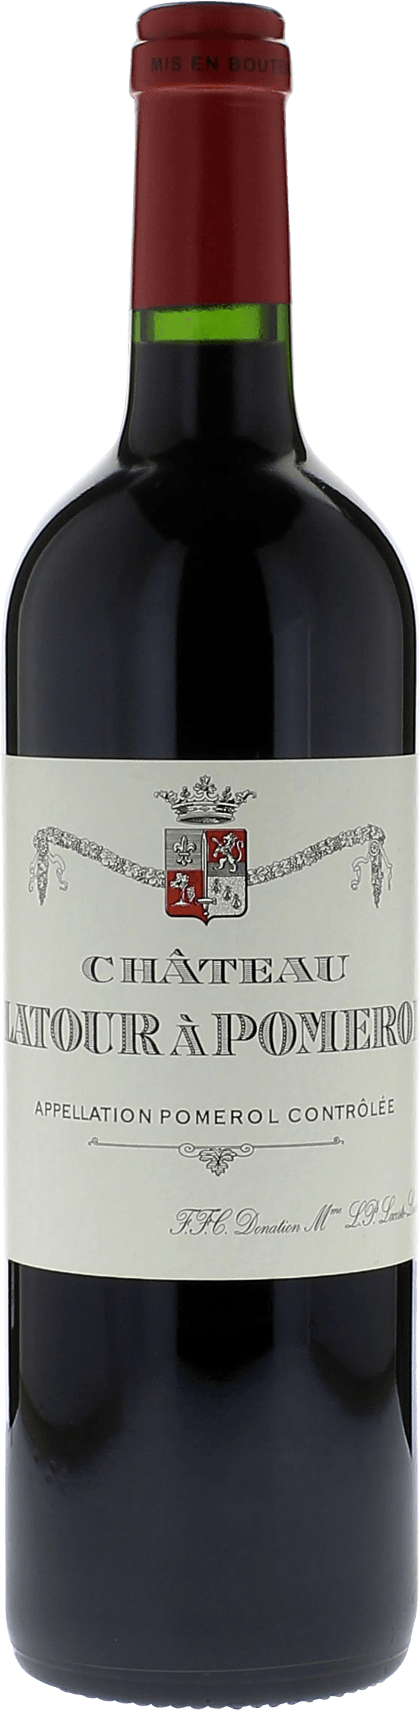 Latour  pomerol 2001  Pomerol, Bordeaux rouge